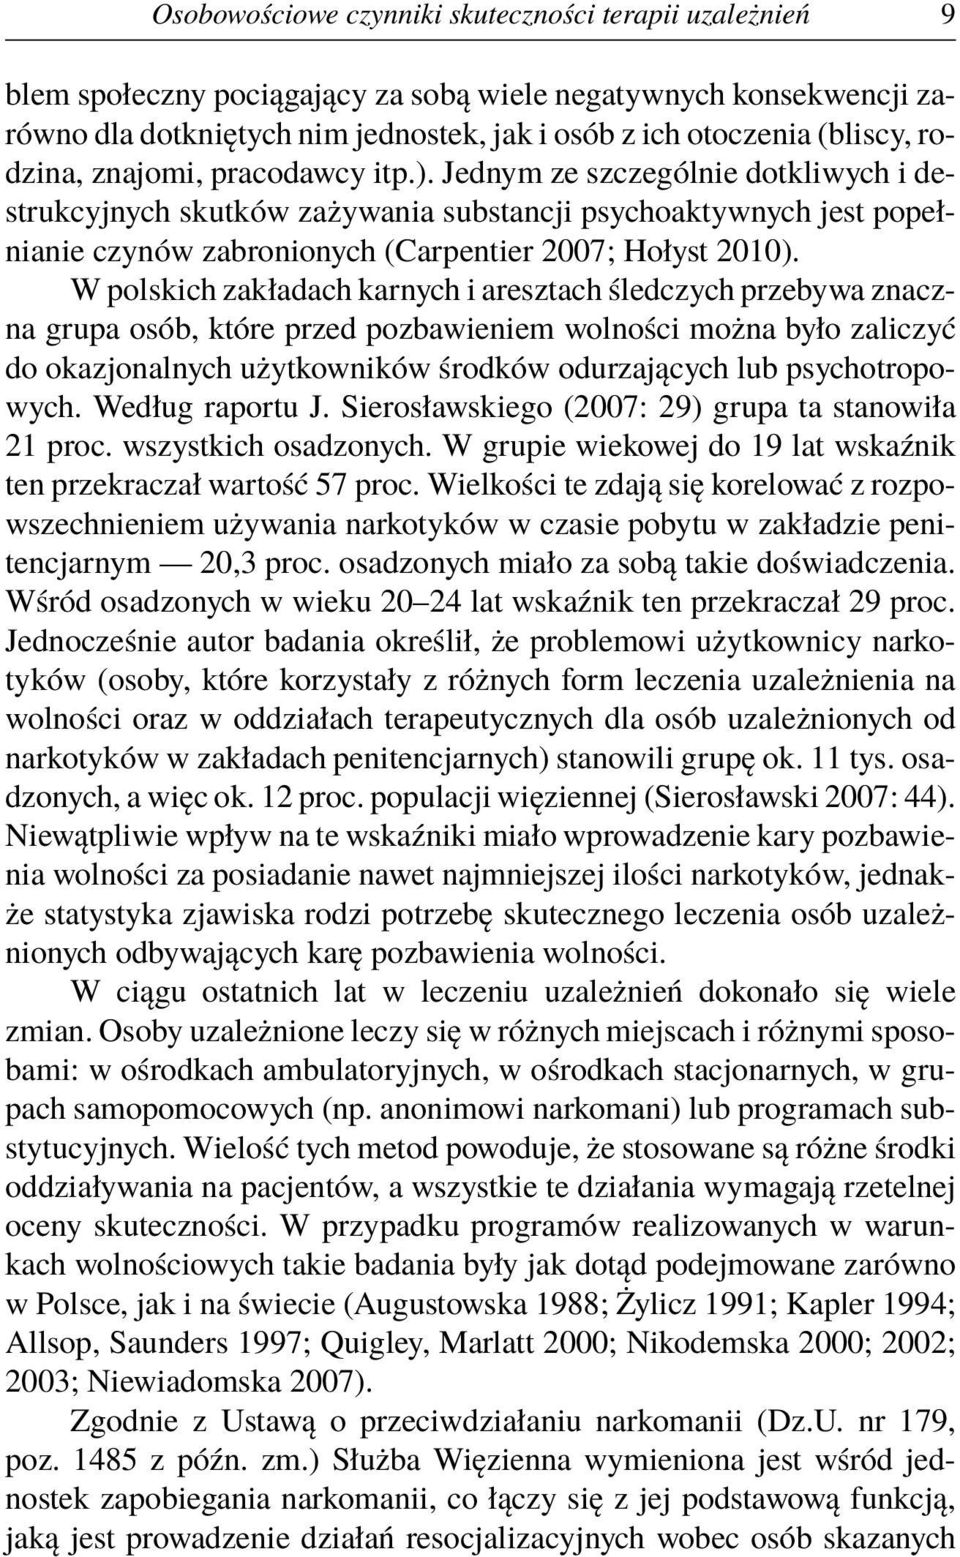 W polskich zakładach karnych i aresztach śledczych przebywa znaczna grupa osób, które przed pozbawieniem wolności można było zaliczyć do okazjonalnych użytkowników środków odurzających lub